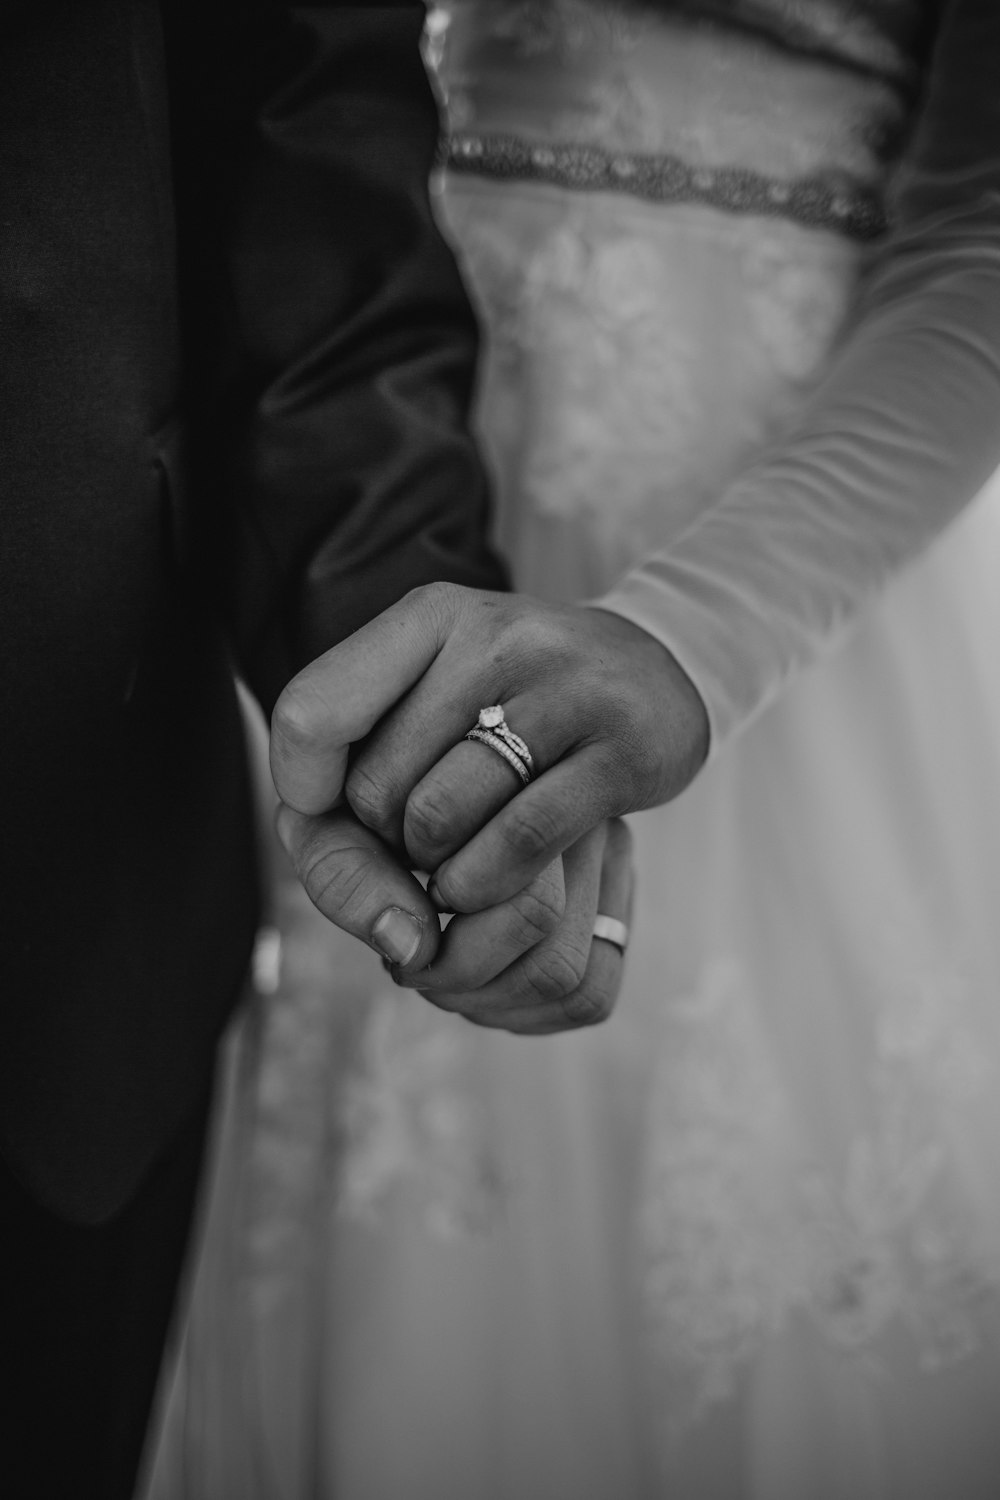 손을 잡고 있는 남자와 여자의 회색조 사진